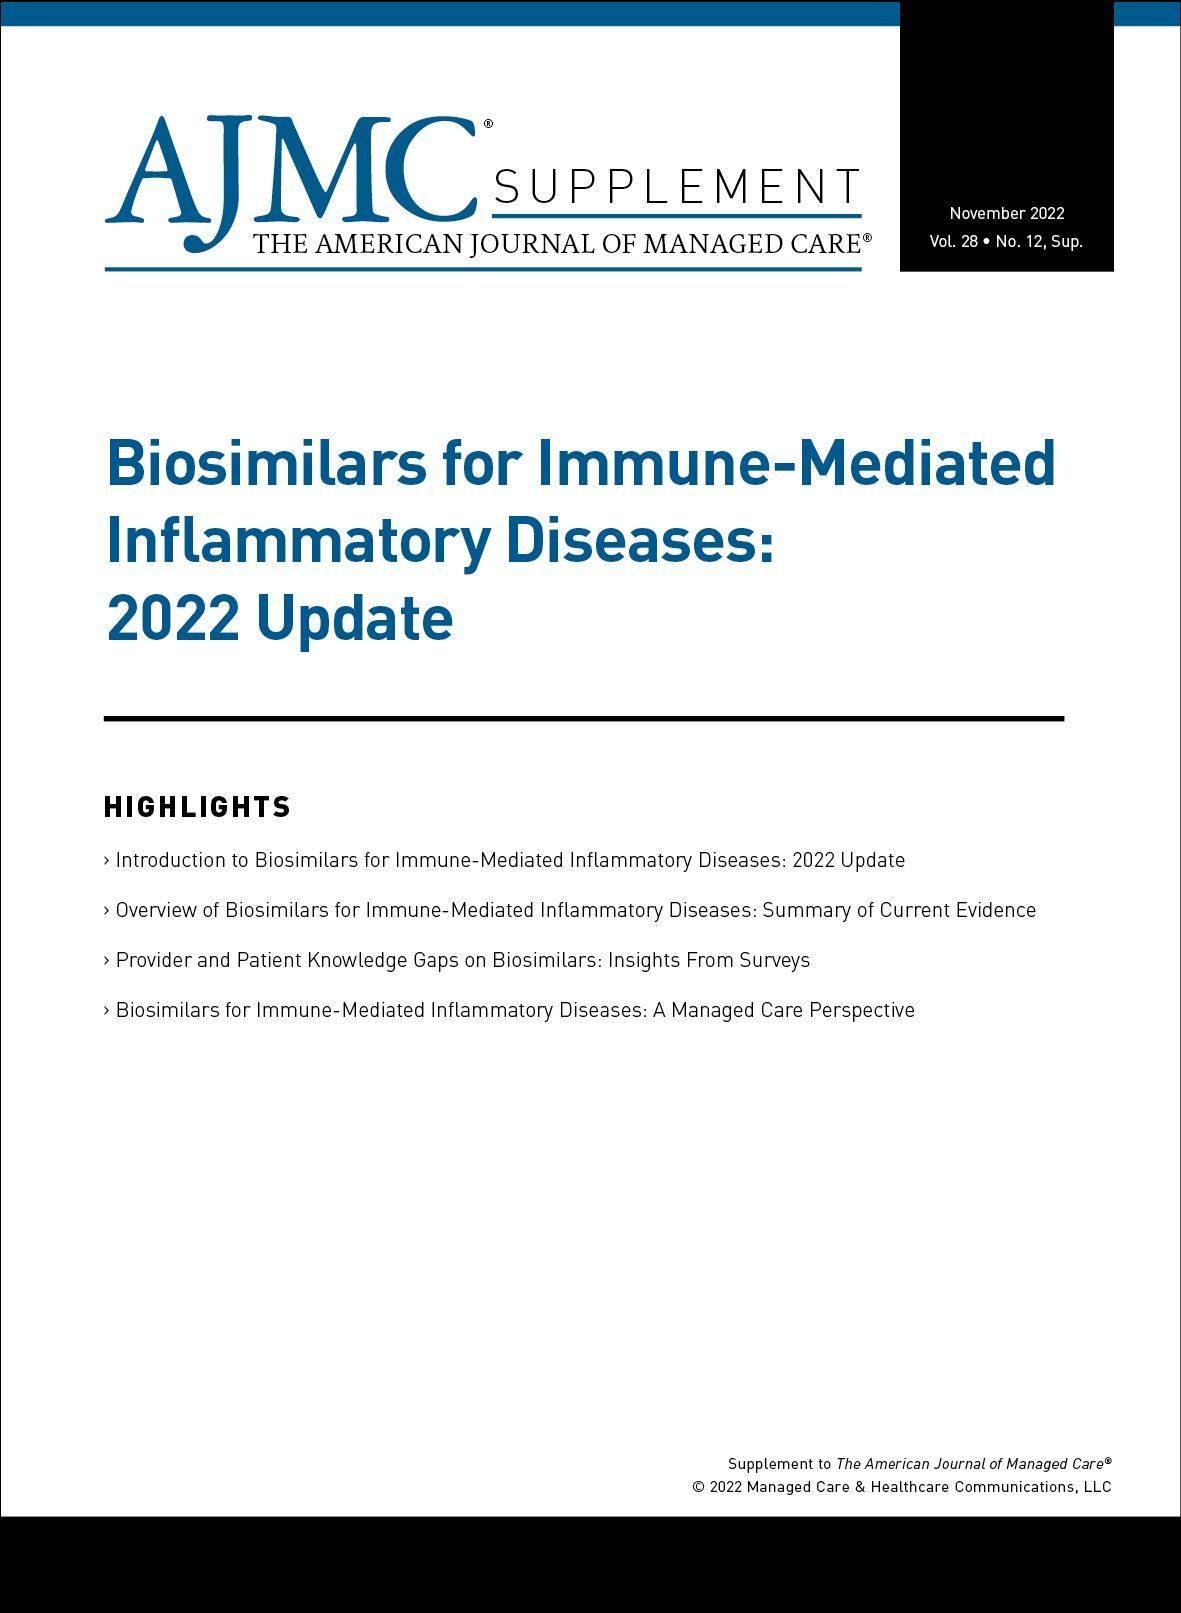 Biosimilars for Immune-Mediated Inflammatory Diseases: 2022 Update